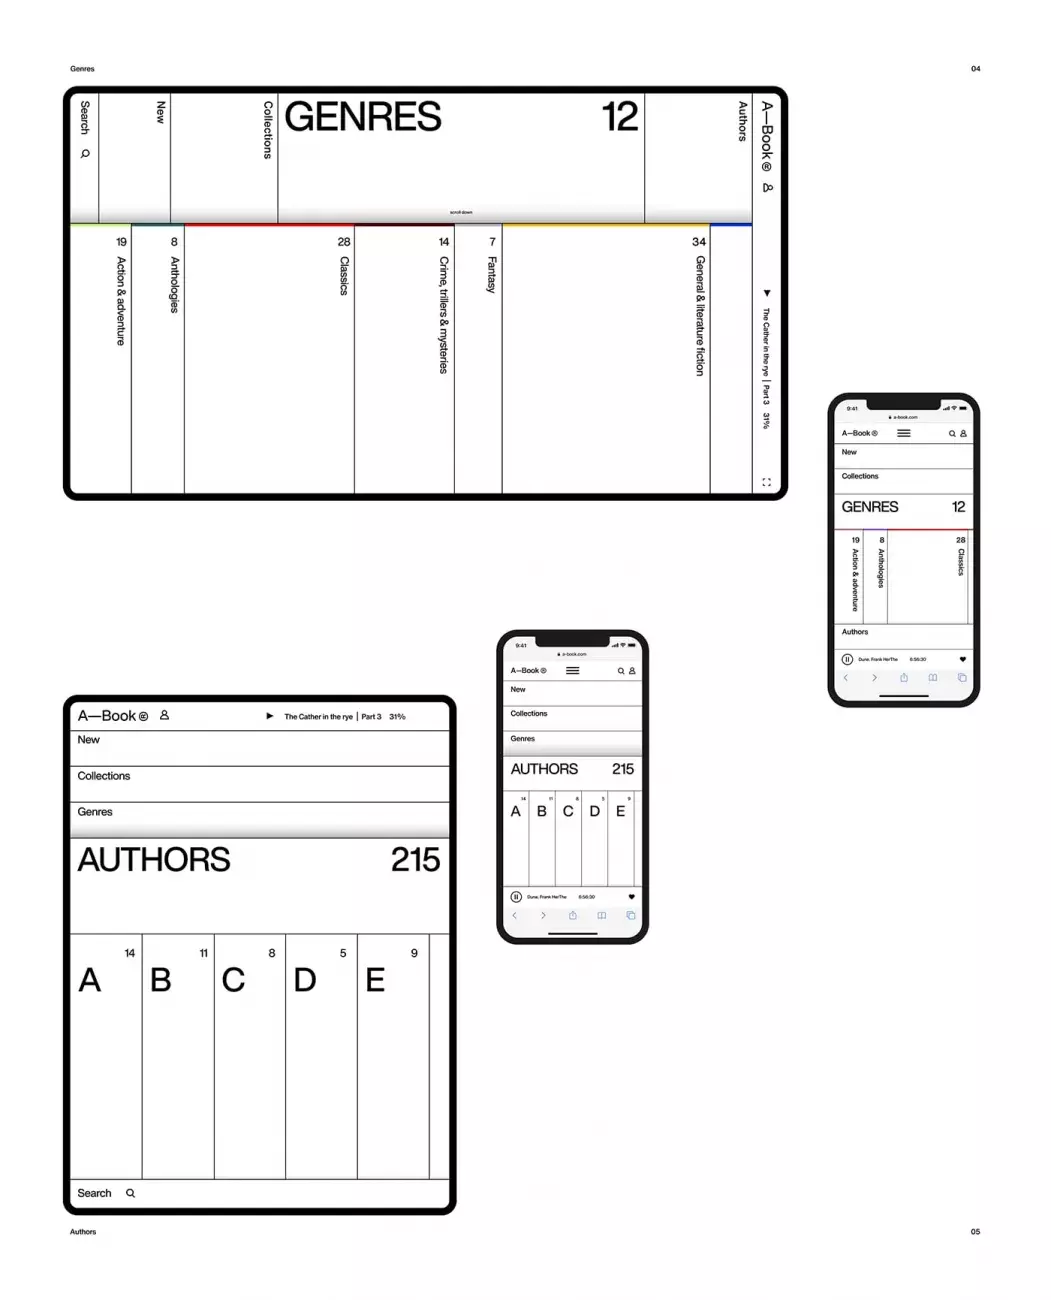 A—Book Modular Web Design Concept